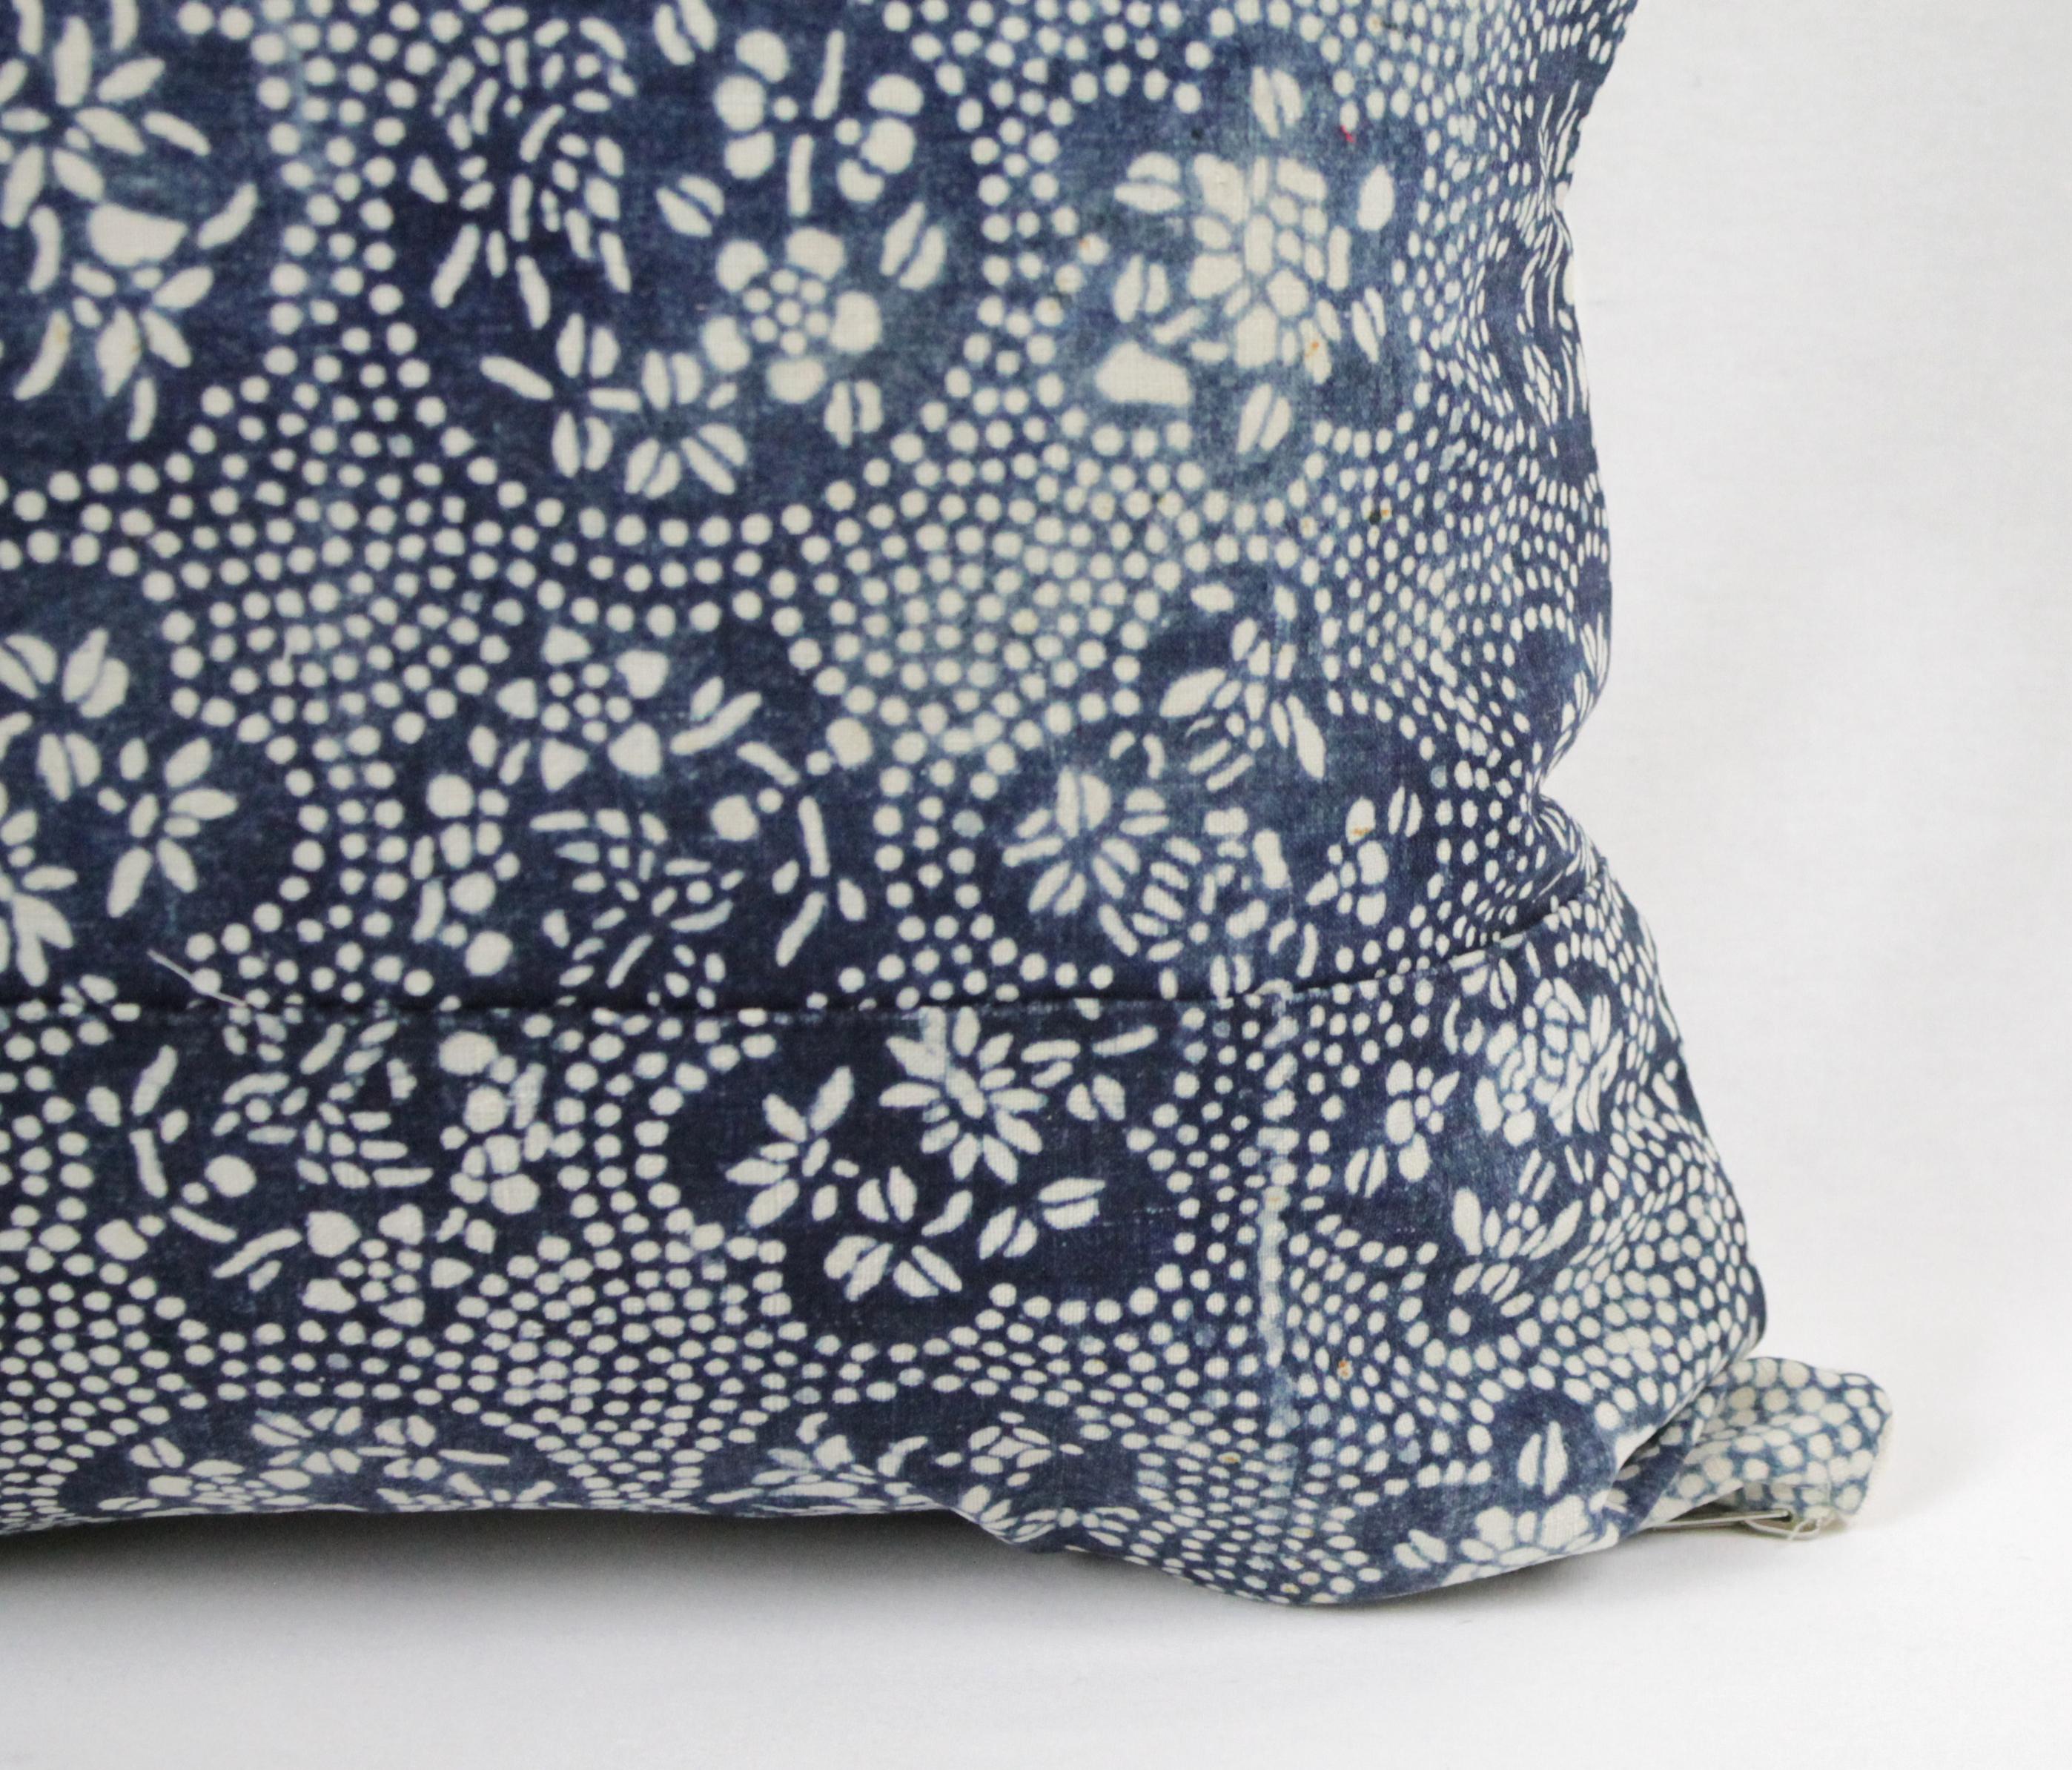 Cotton Vintage Japanese Indigo Batik Style Pillow